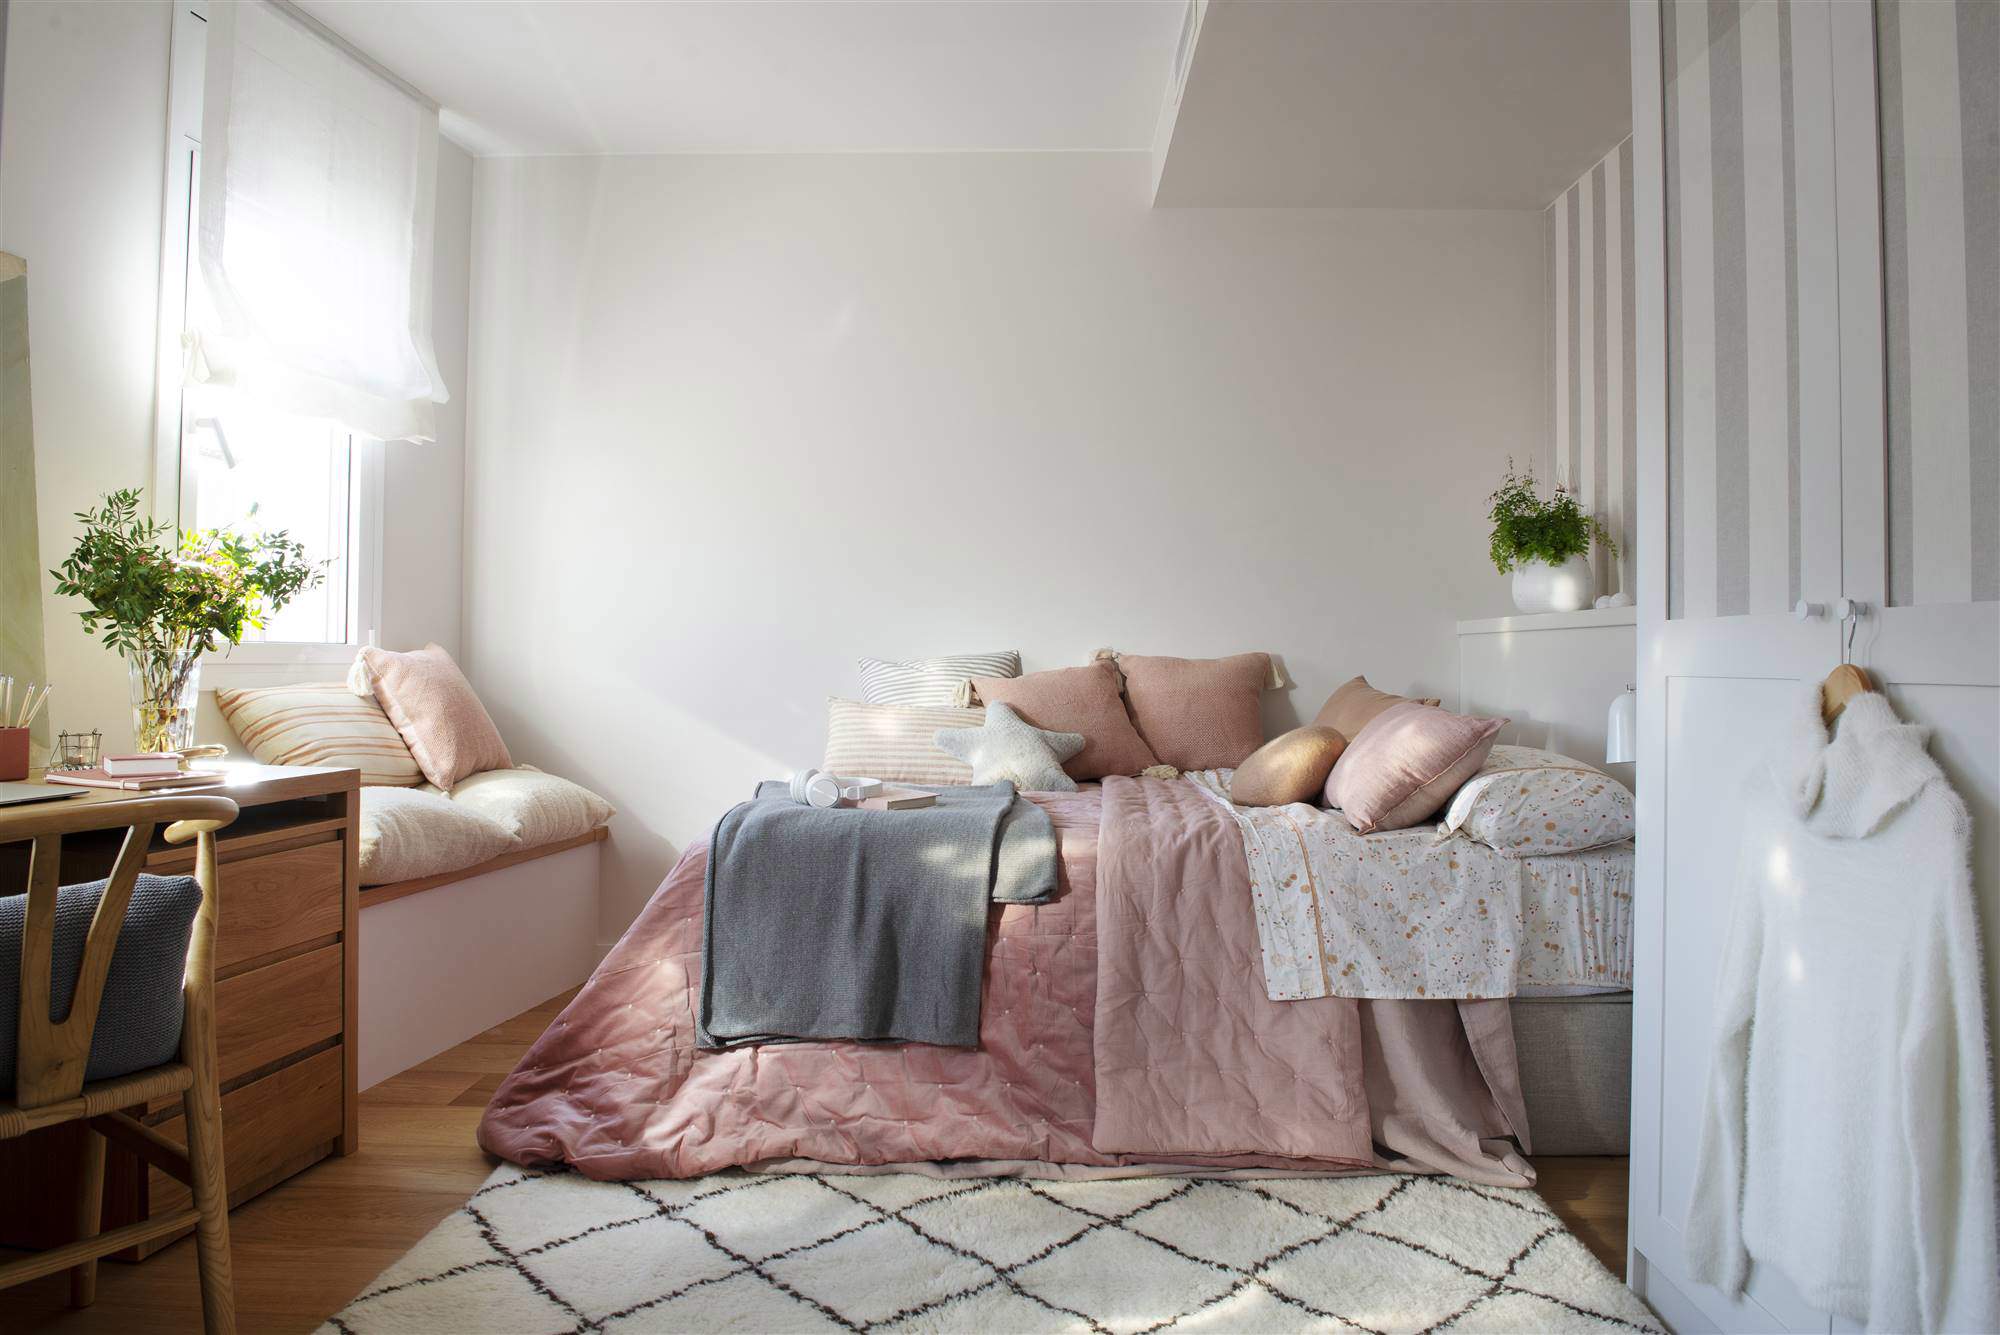 Dormitorio juvenil con ropa de cama rosa y banco bajo la ventana.